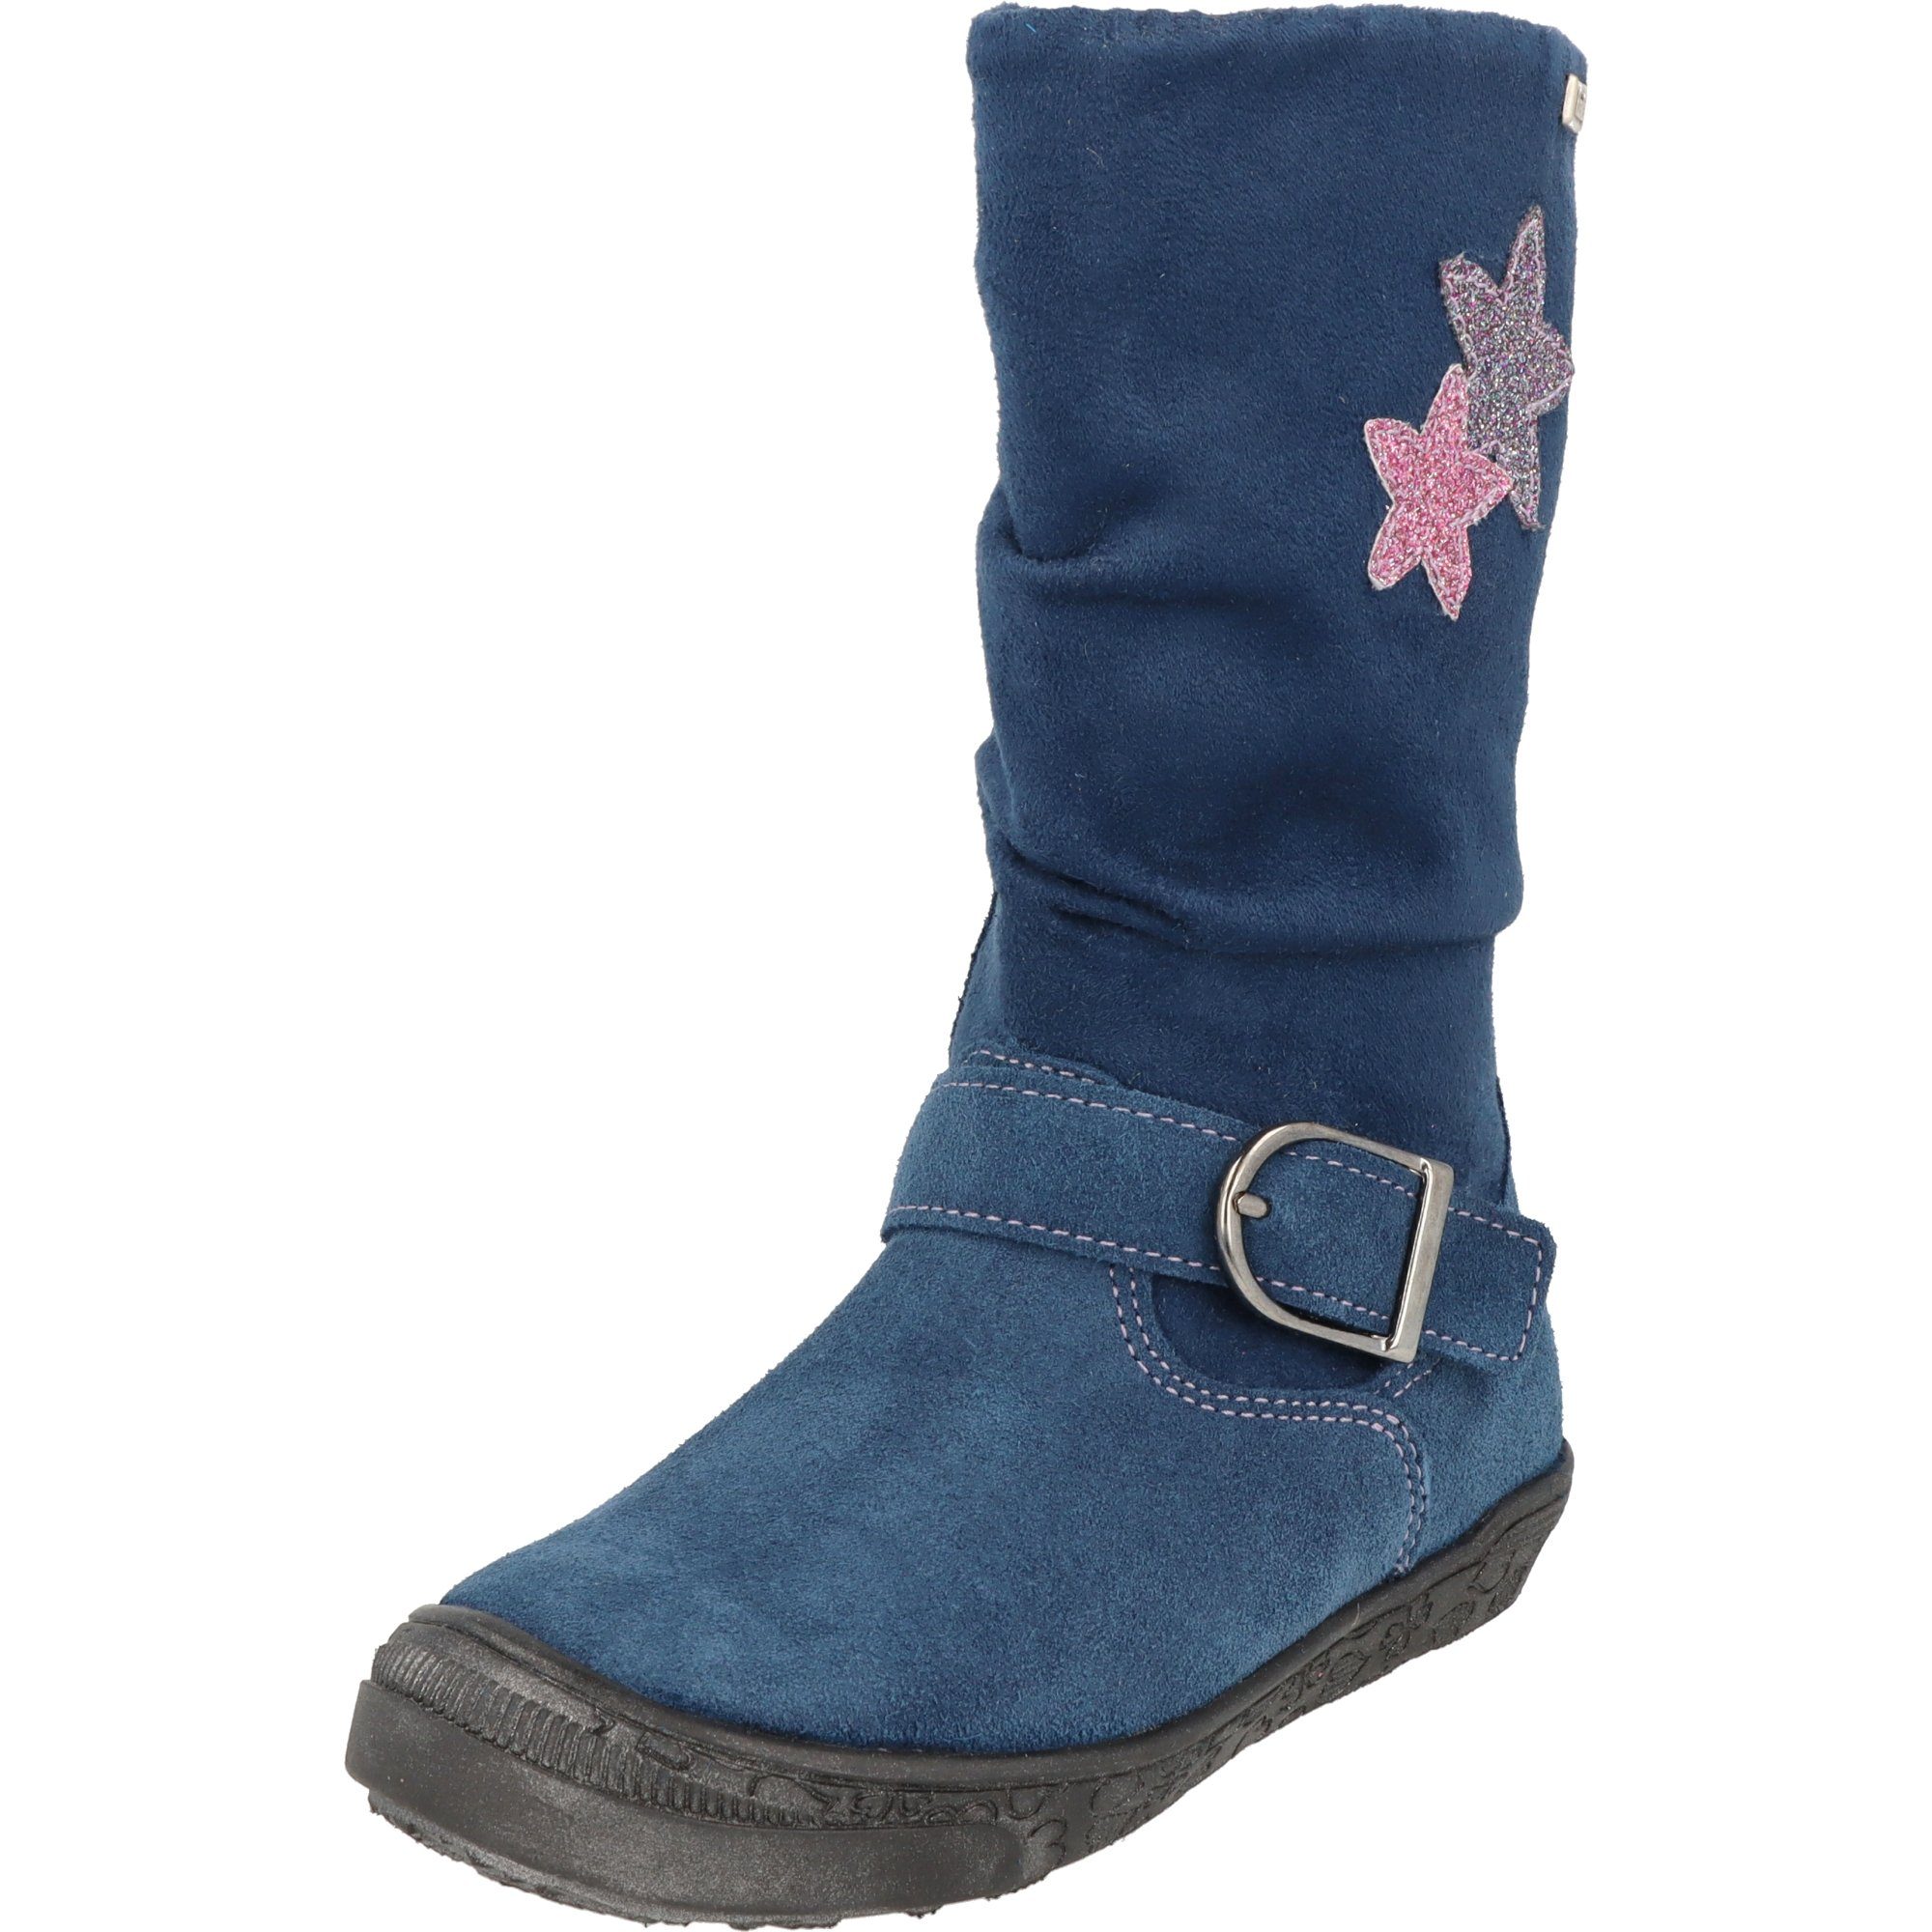 Mädchen Schuhe Leder Tex Stiefel 4152-456-6811 gefüttert Blau Sterne Winterstiefel